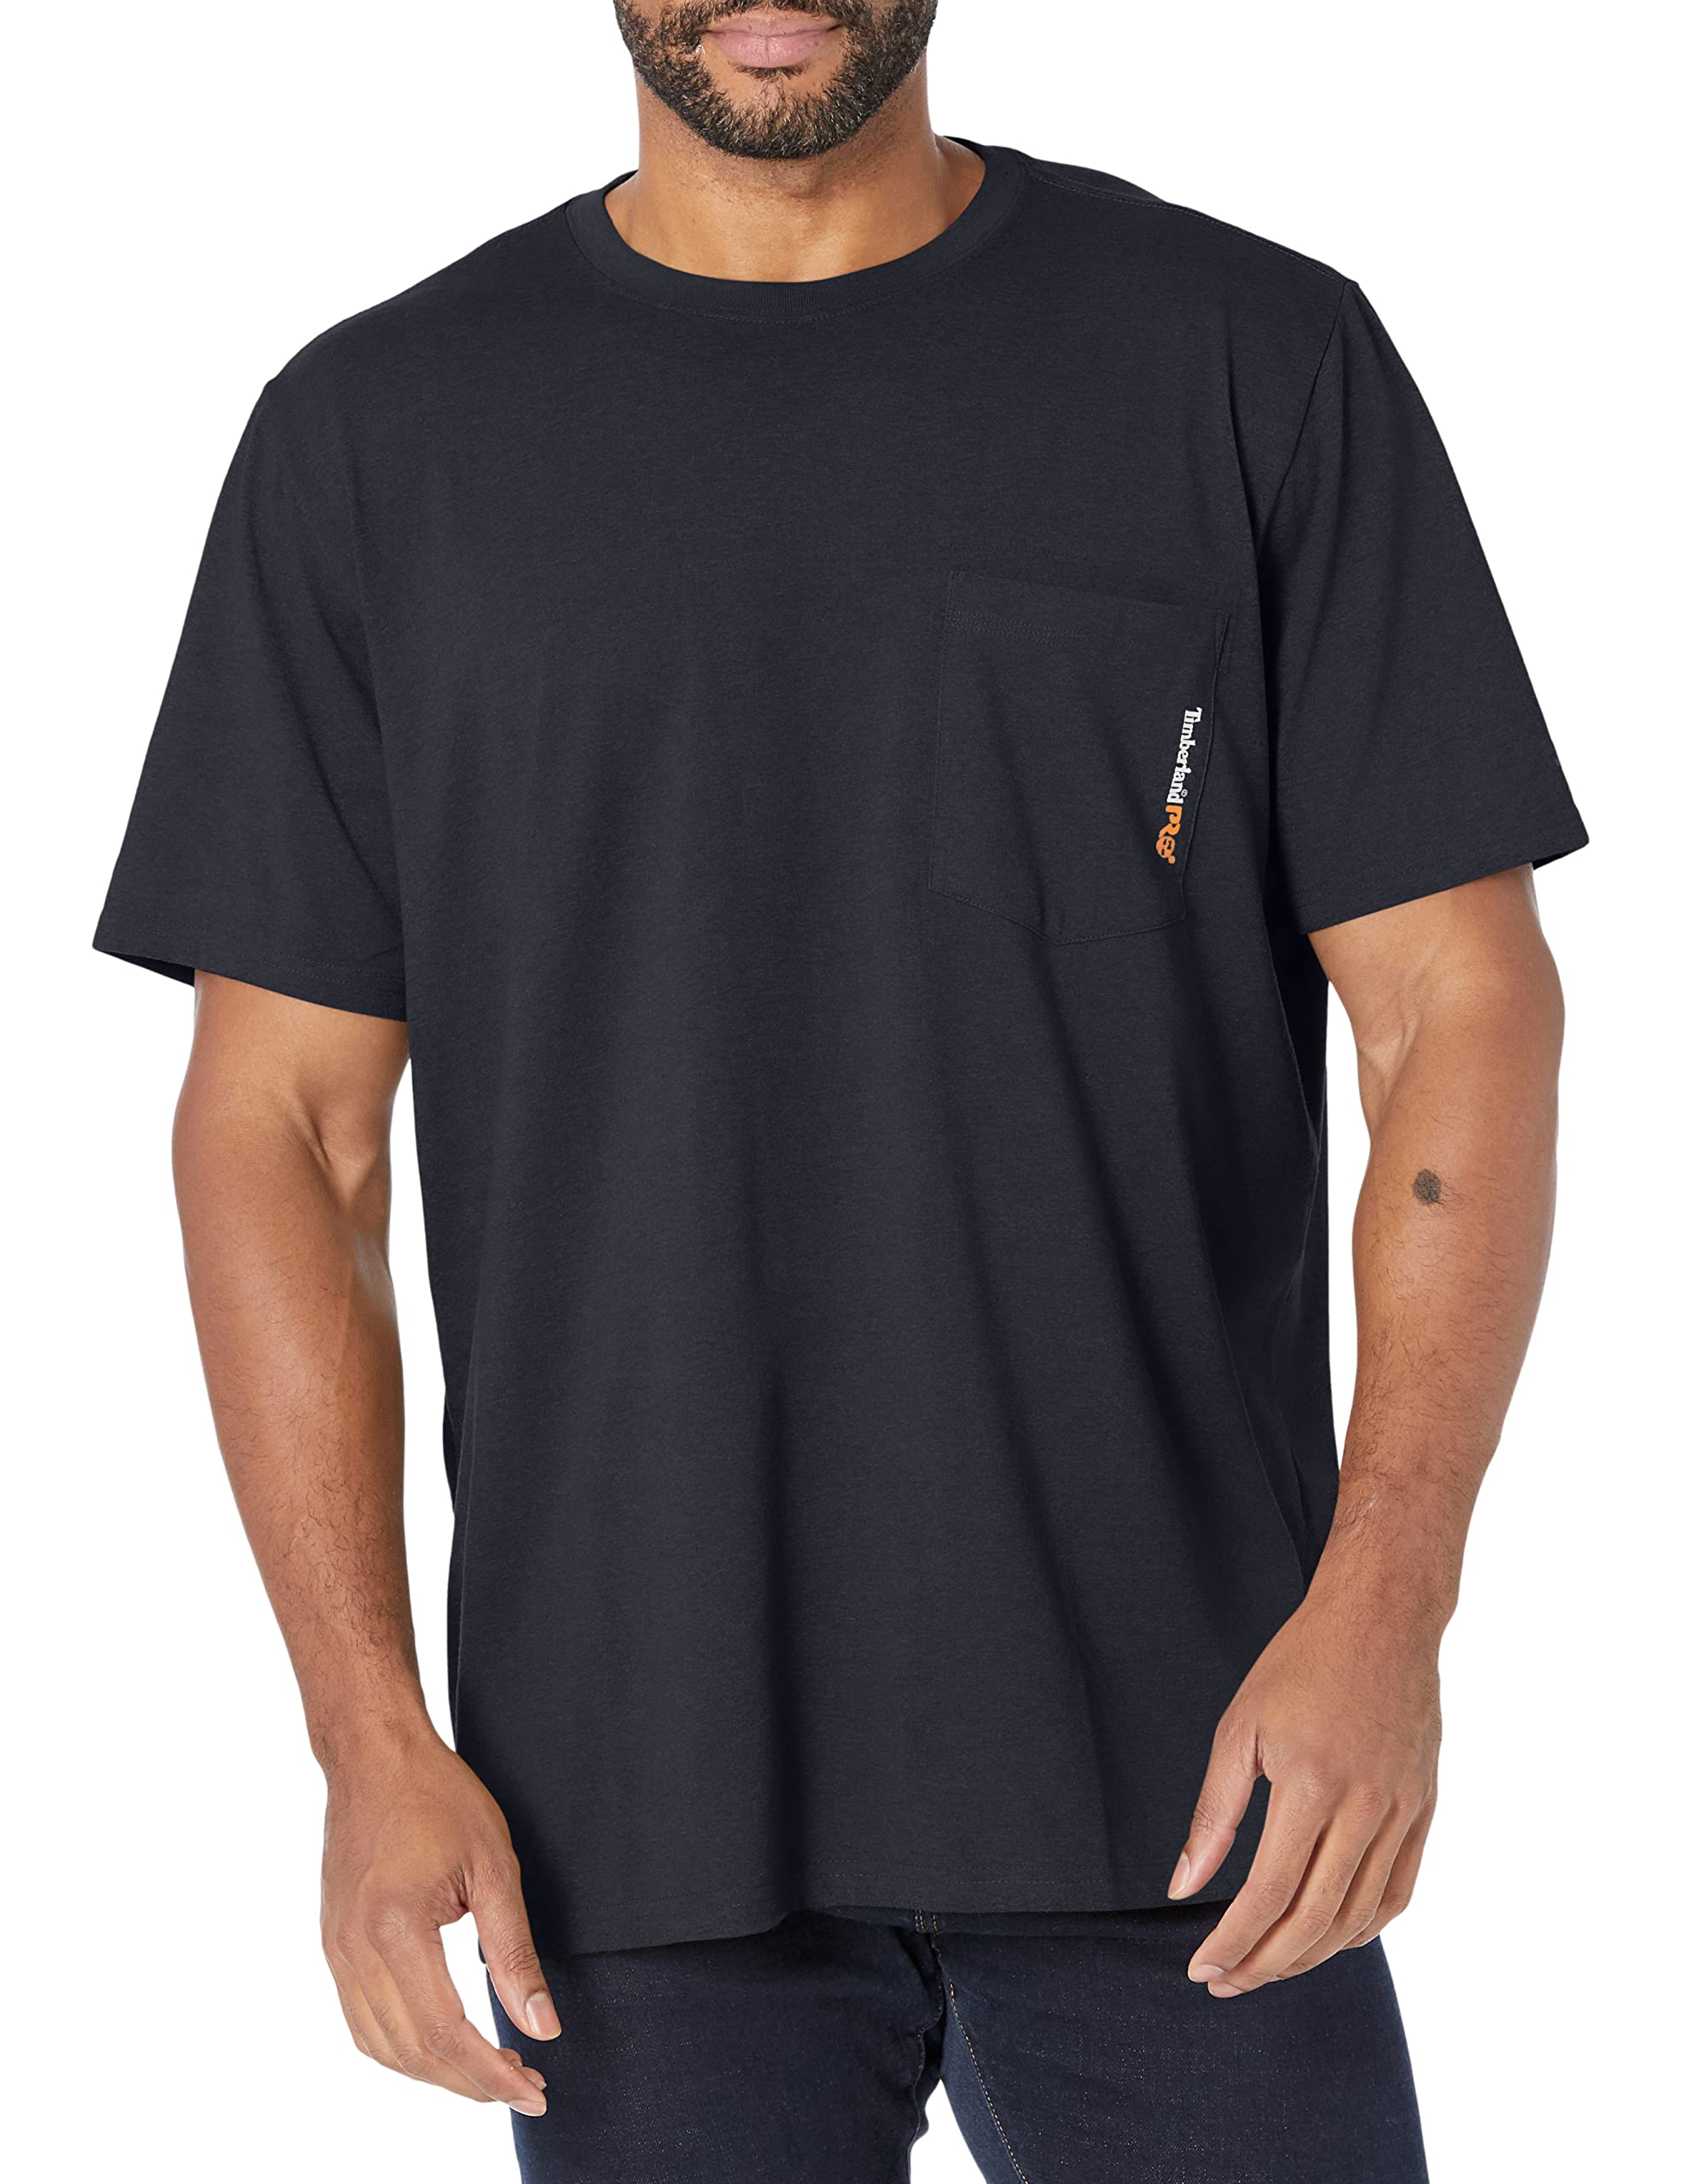 Tendance  Timberland T- Shirt À Manches Courtes avec Plaque de Base d´utilité Professionnelle Homme LfHL0EJtO tout pour vous